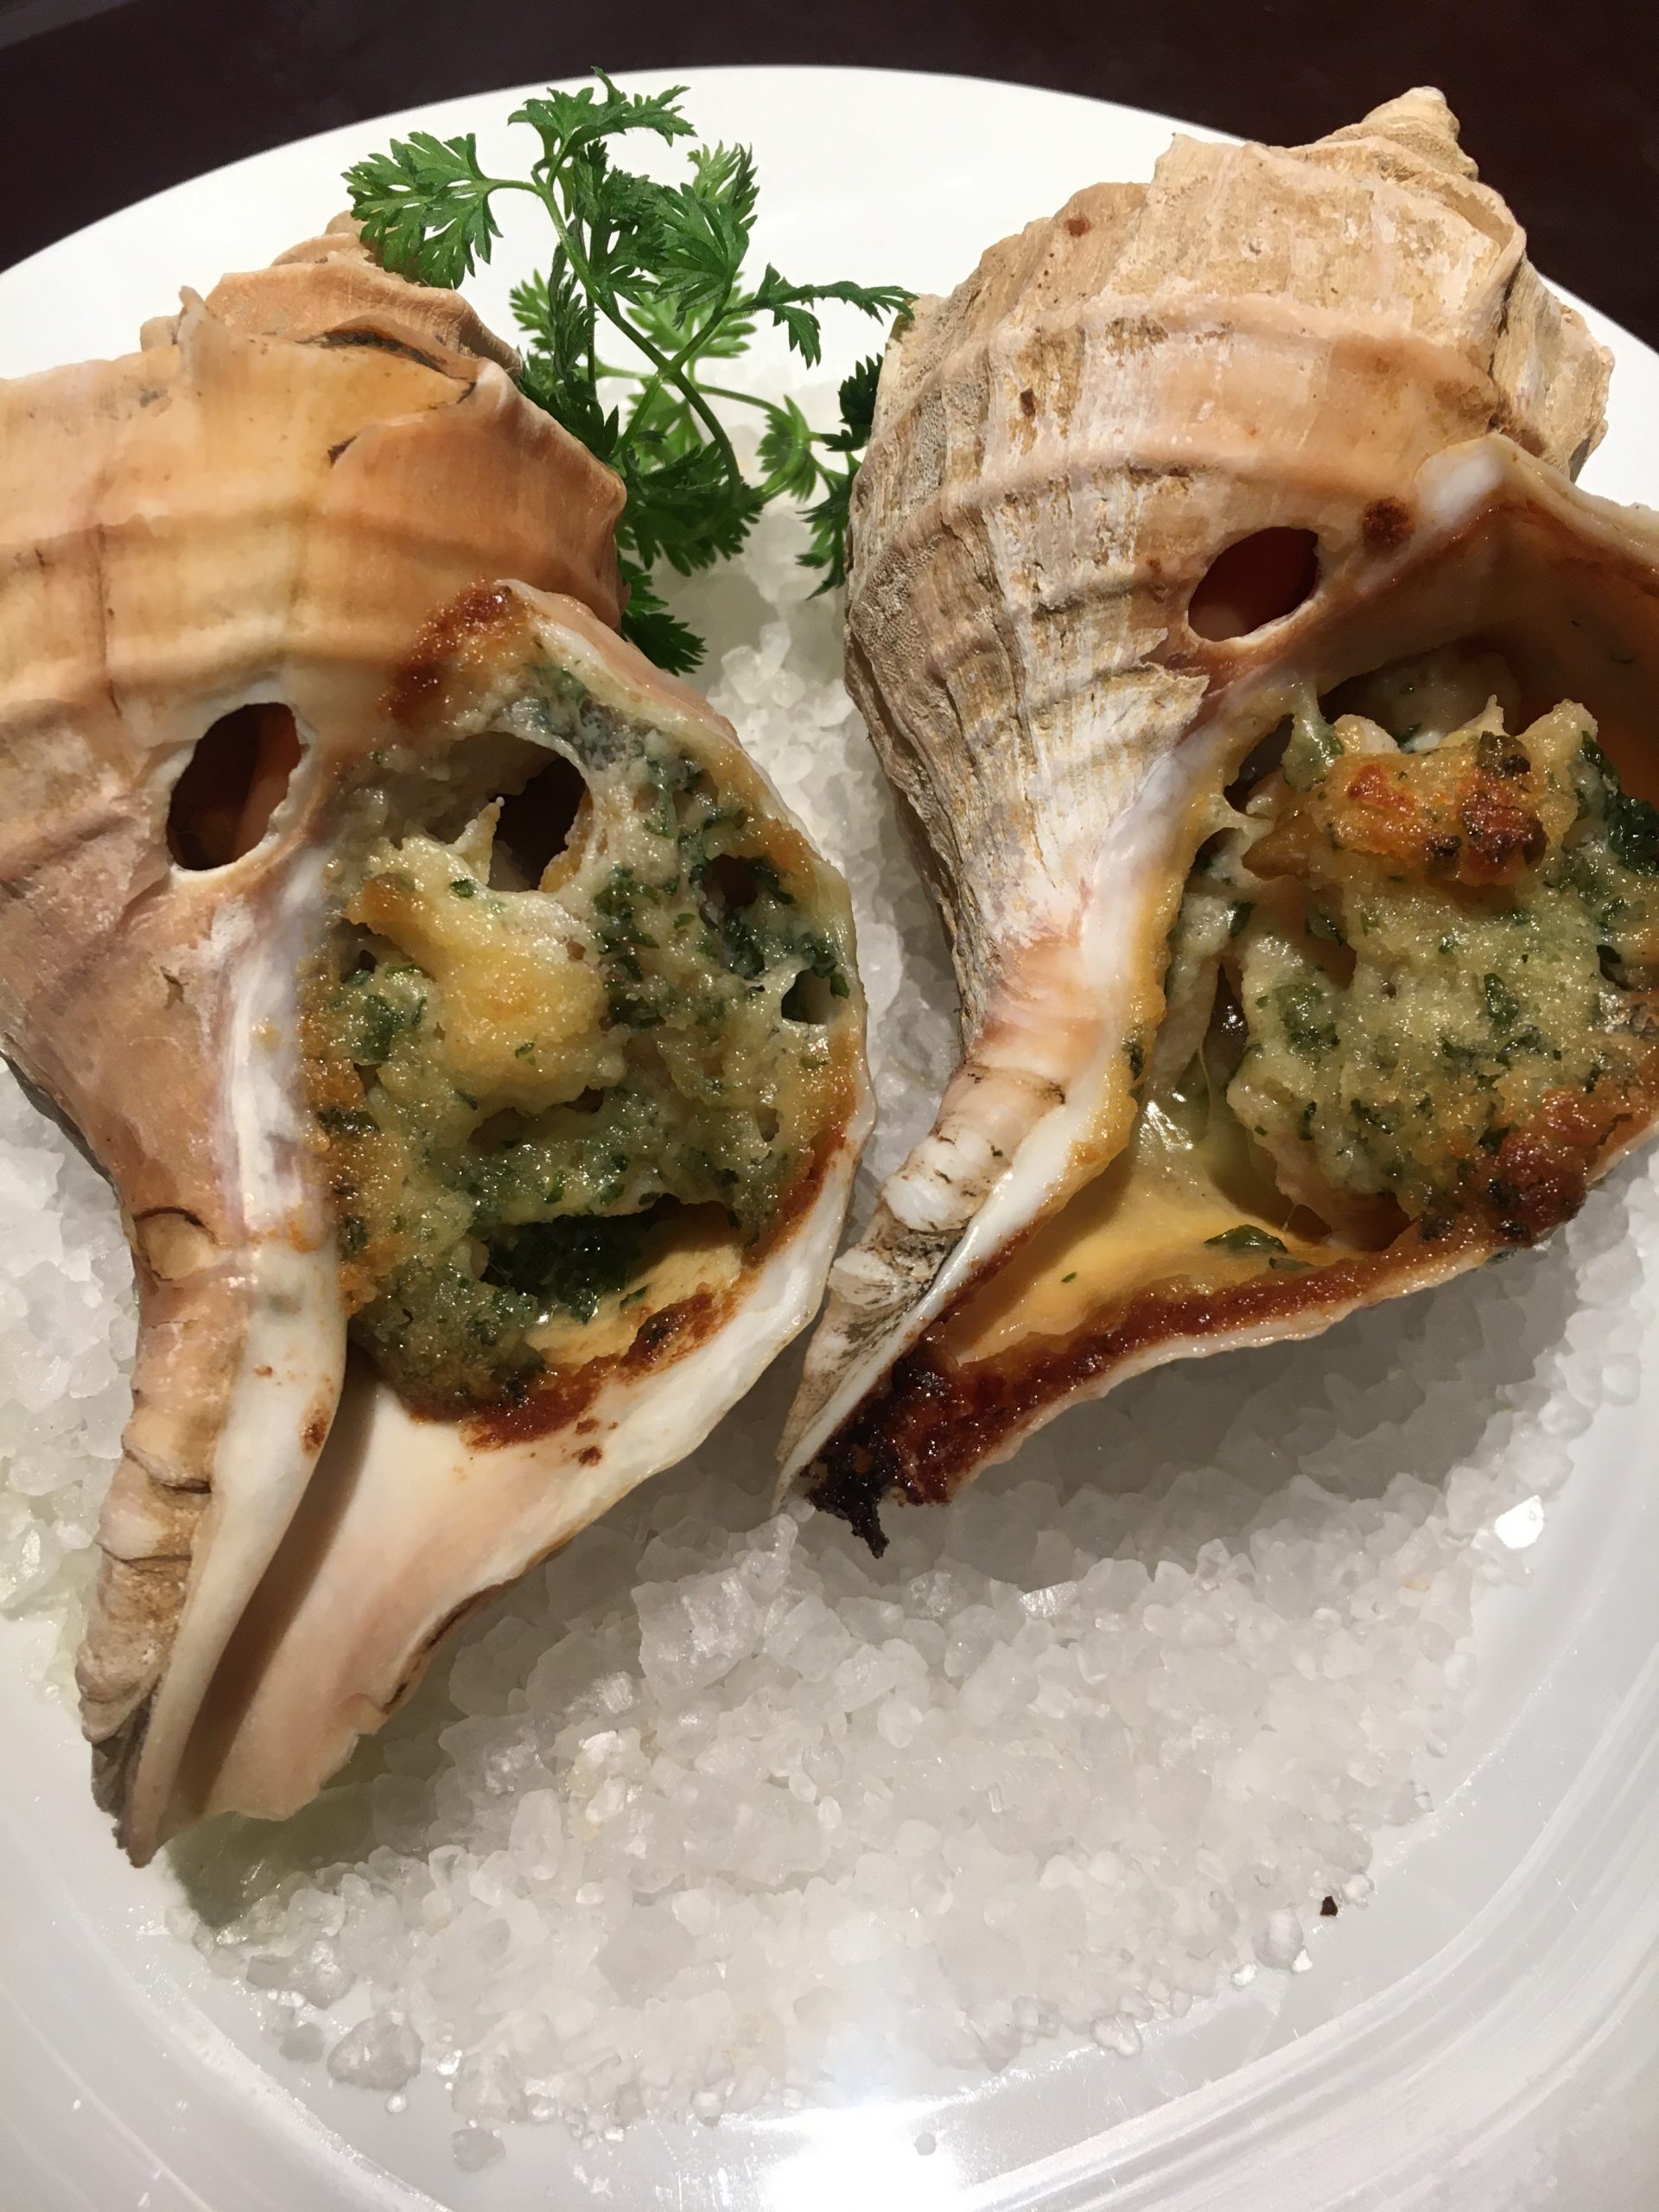 ツブ貝のブルゴーニュバター焼き 海の恵み 食の底力 Japan 公式レシピサイト